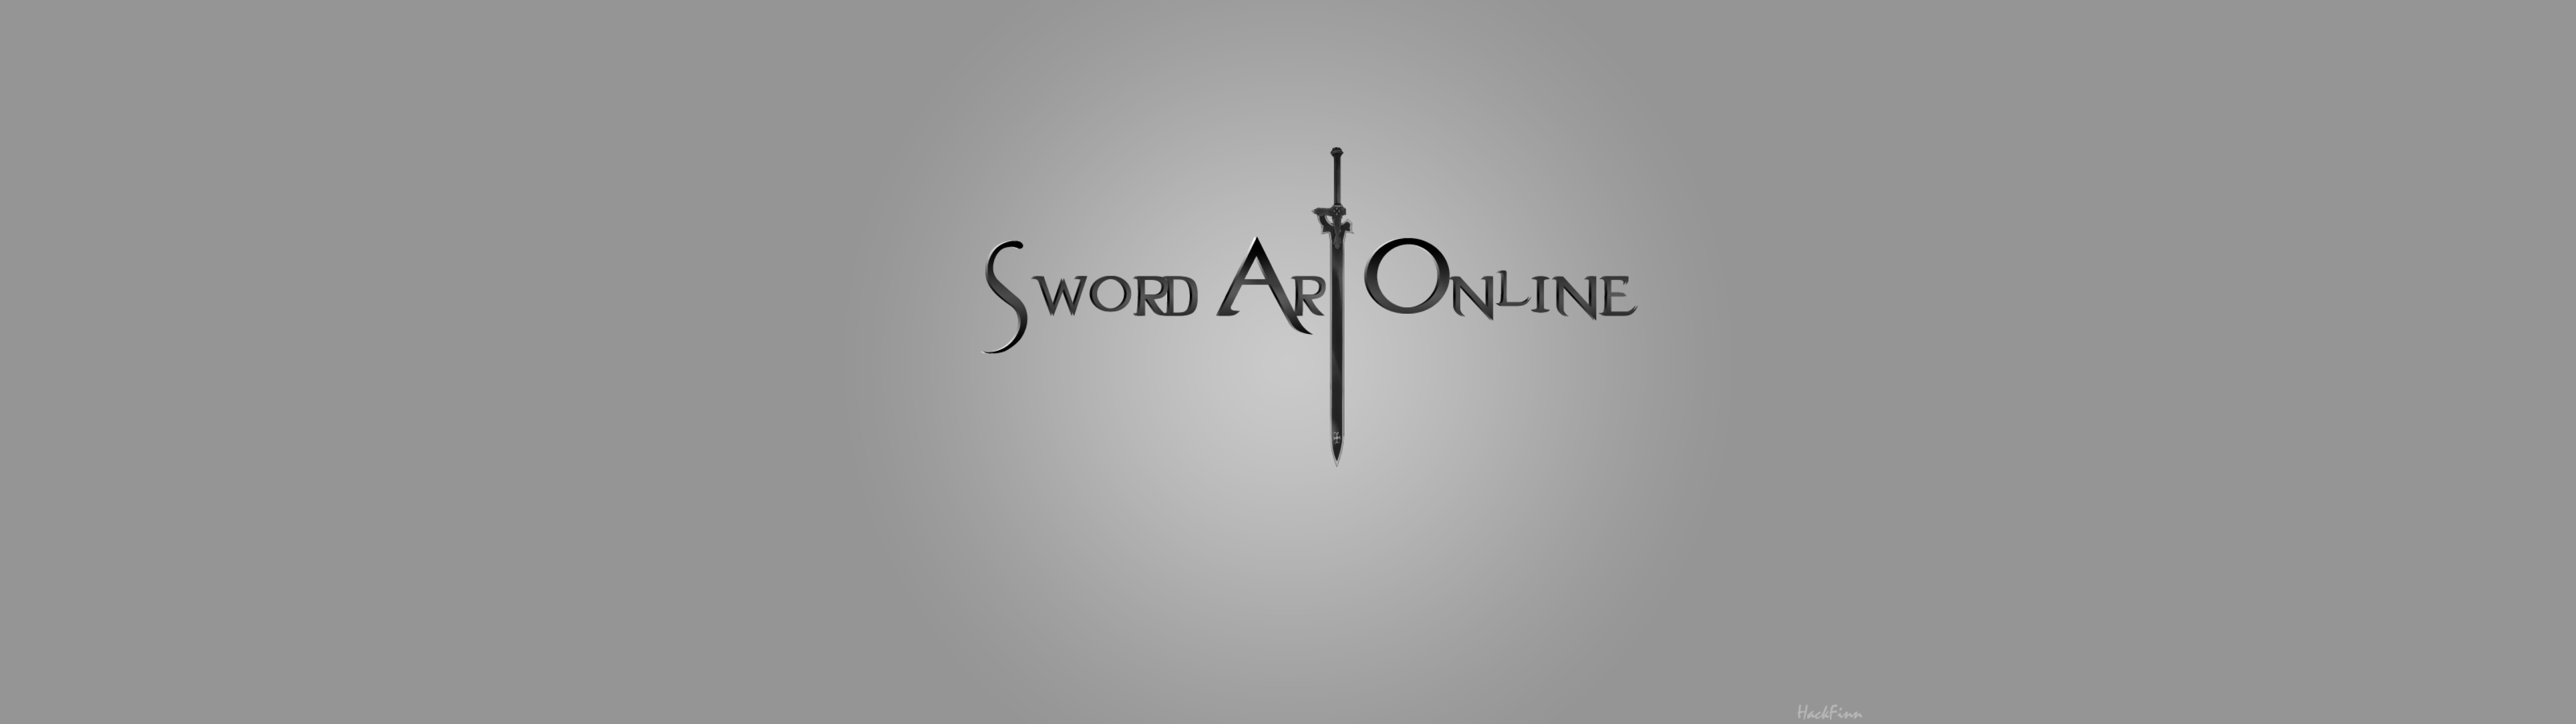 Anime Sword Art Online Wallpaper